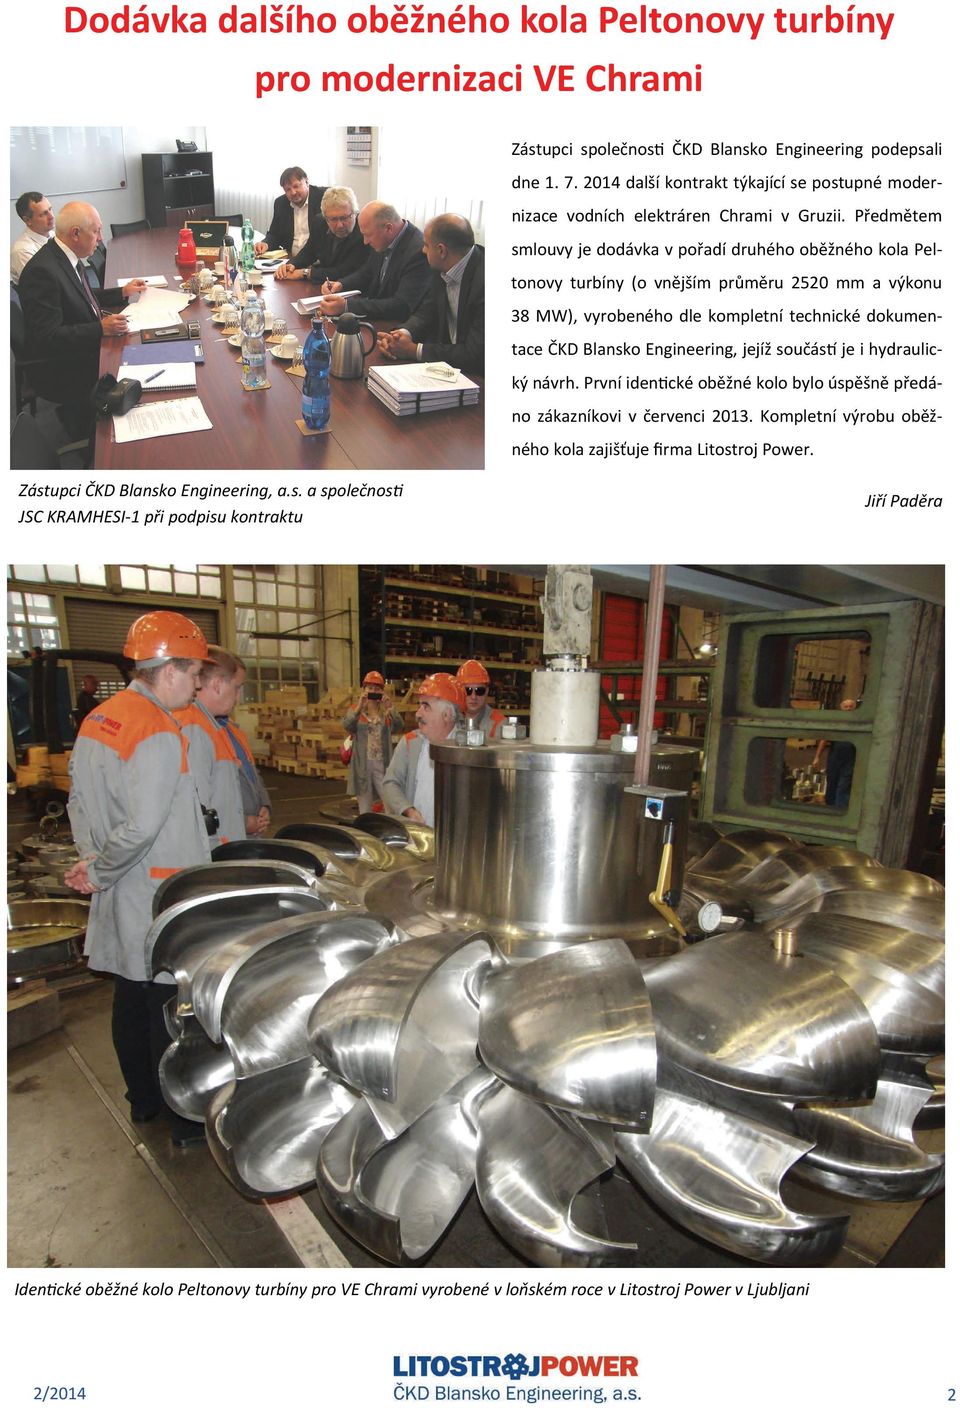 Předmětem smlouvy je dodávka v pořadí druhého oběžného kola Peltonovy turbíny (o vnějším průměru 2520 mm a výkonu 38 MW), vyrobeného dle kompletní technické dokumentace ČKD Blansko Engineering, jejíž